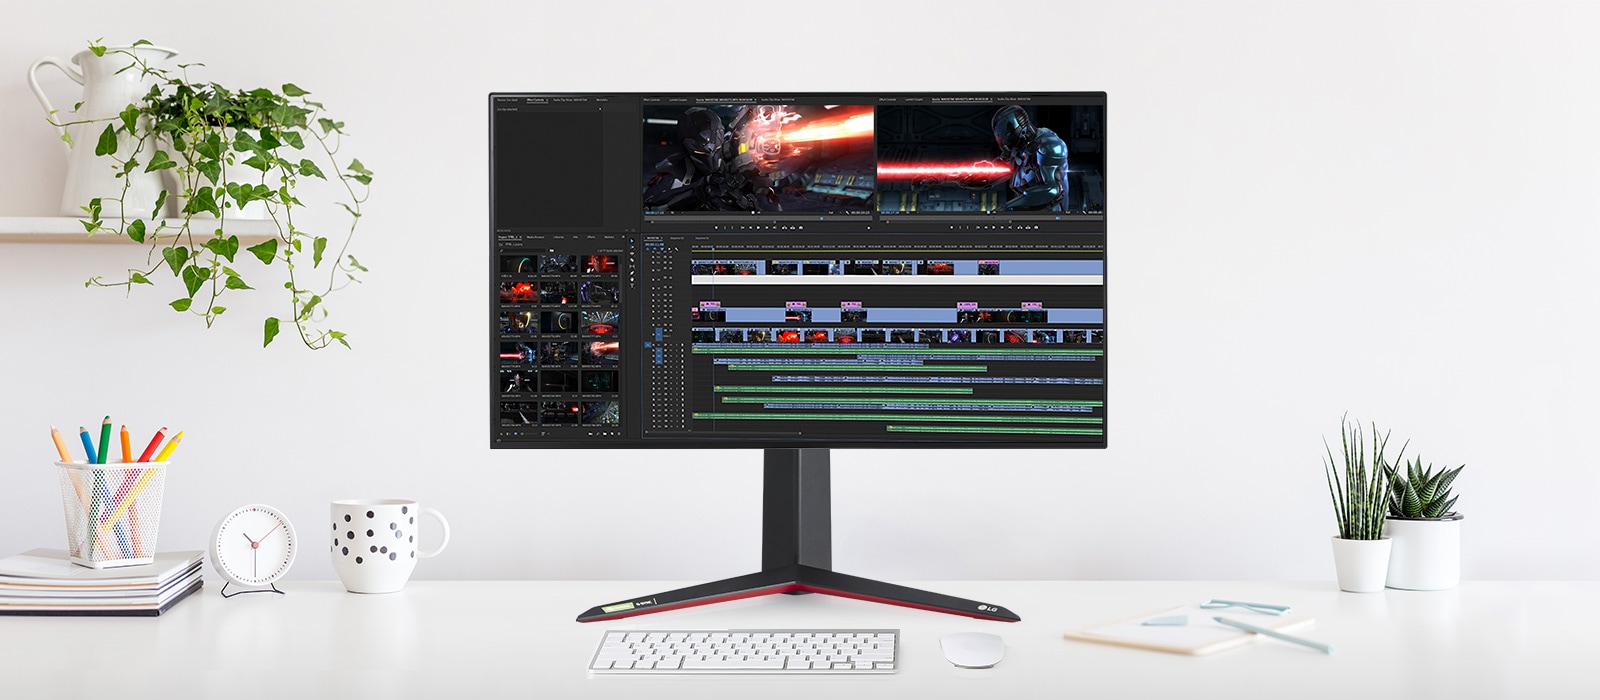 Monitorul suportă o rezoluție 4K UHD care acoperă 98% din gama de culori DCI-P3 și 10 biți de culoare